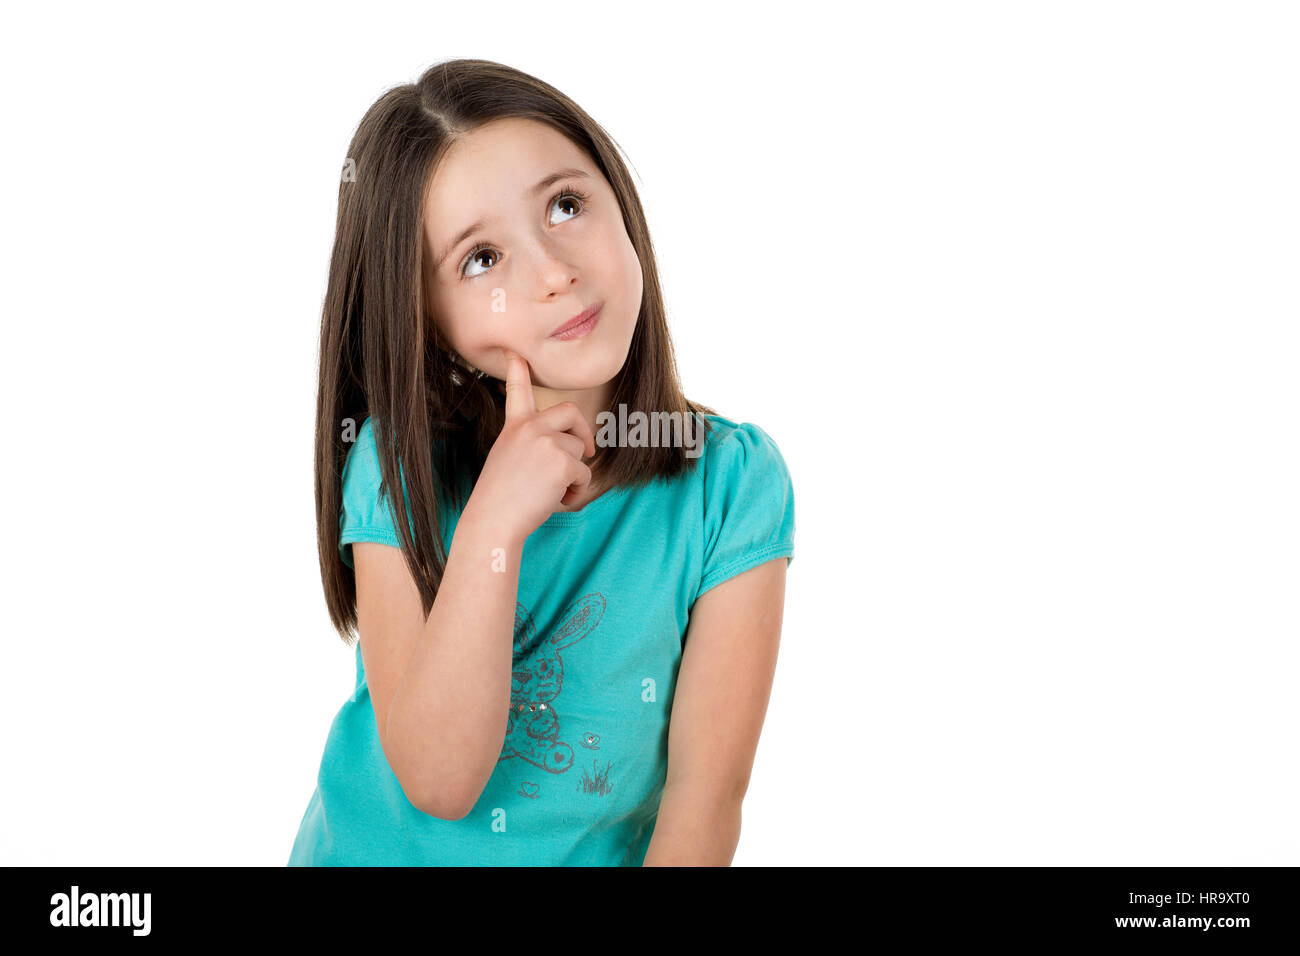 School girl cercando di pensare e chiedersi o alla ricerca di indizi o idee. Isolato su uno sfondo bianco. Foto Stock